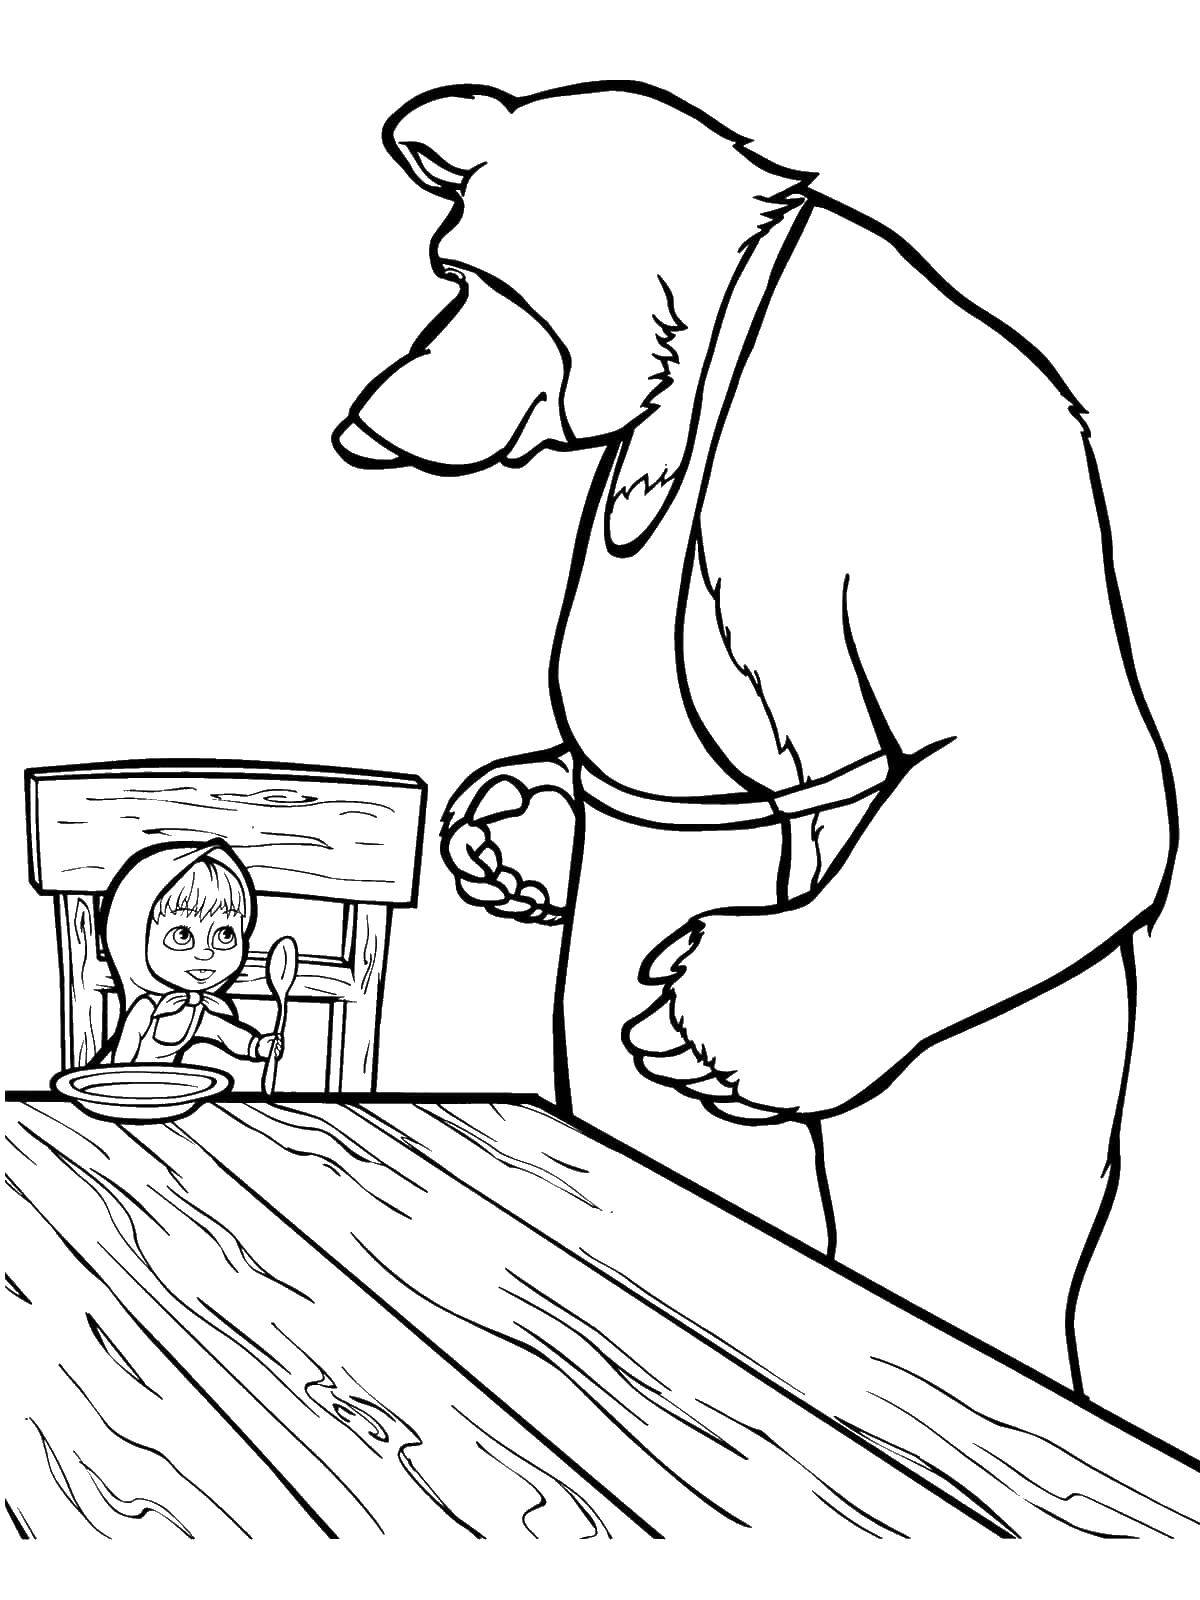 Раскраски для детей про озорную Машу из мультфильма Маша и медведь  Мишка кормит машу